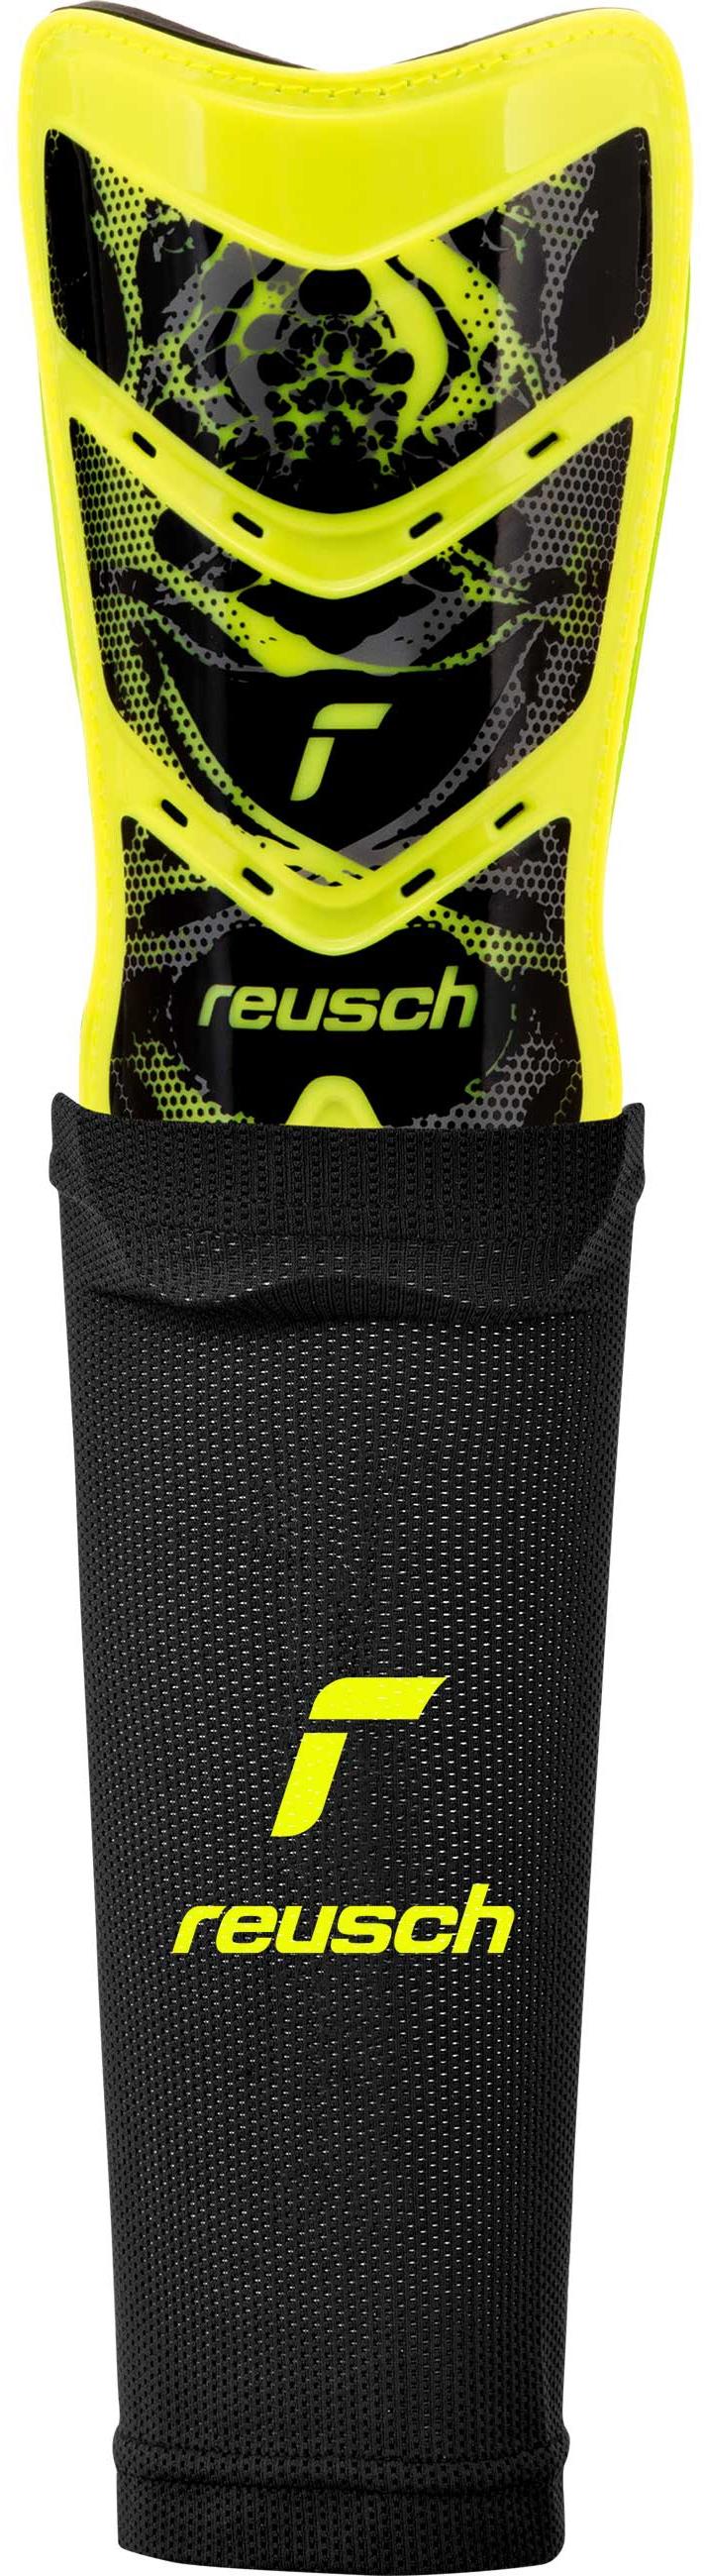 Reusch Reusch Shinguard Attrakt Supreme Online / yellow 2700 safety kaufen von Schienbeinschoner black im SportScheck Shop